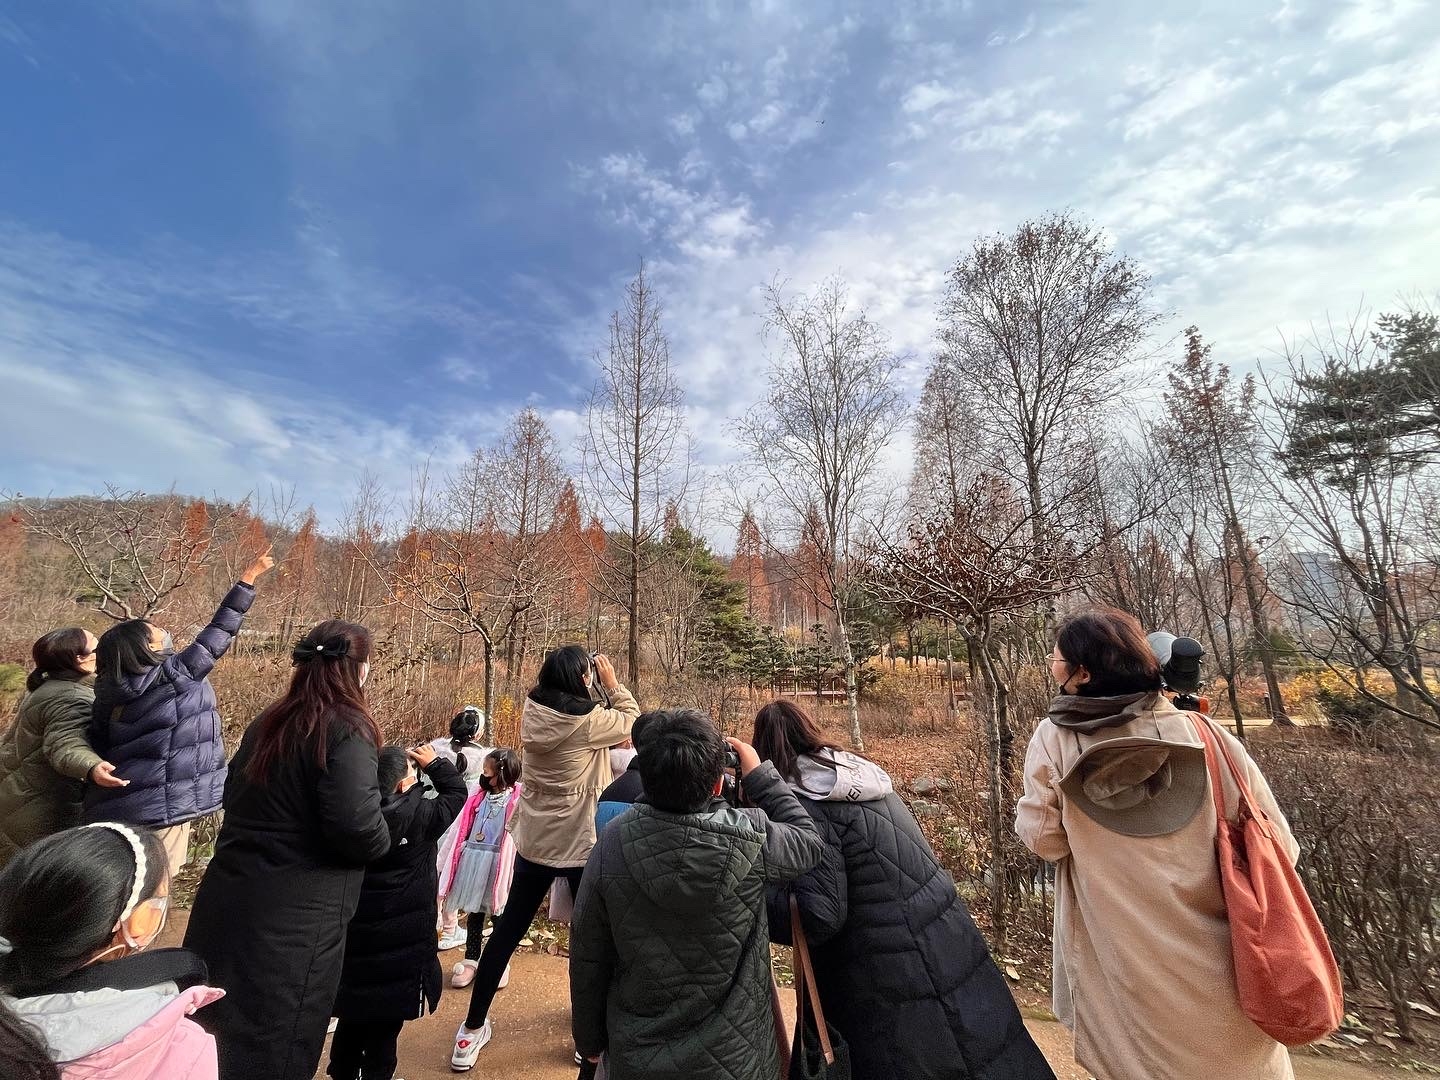 서울 푸른수목원에서 참가자들이 새관찰과 겨울모이만들기 프로그램에 참여하고 있다. 서울시 제공